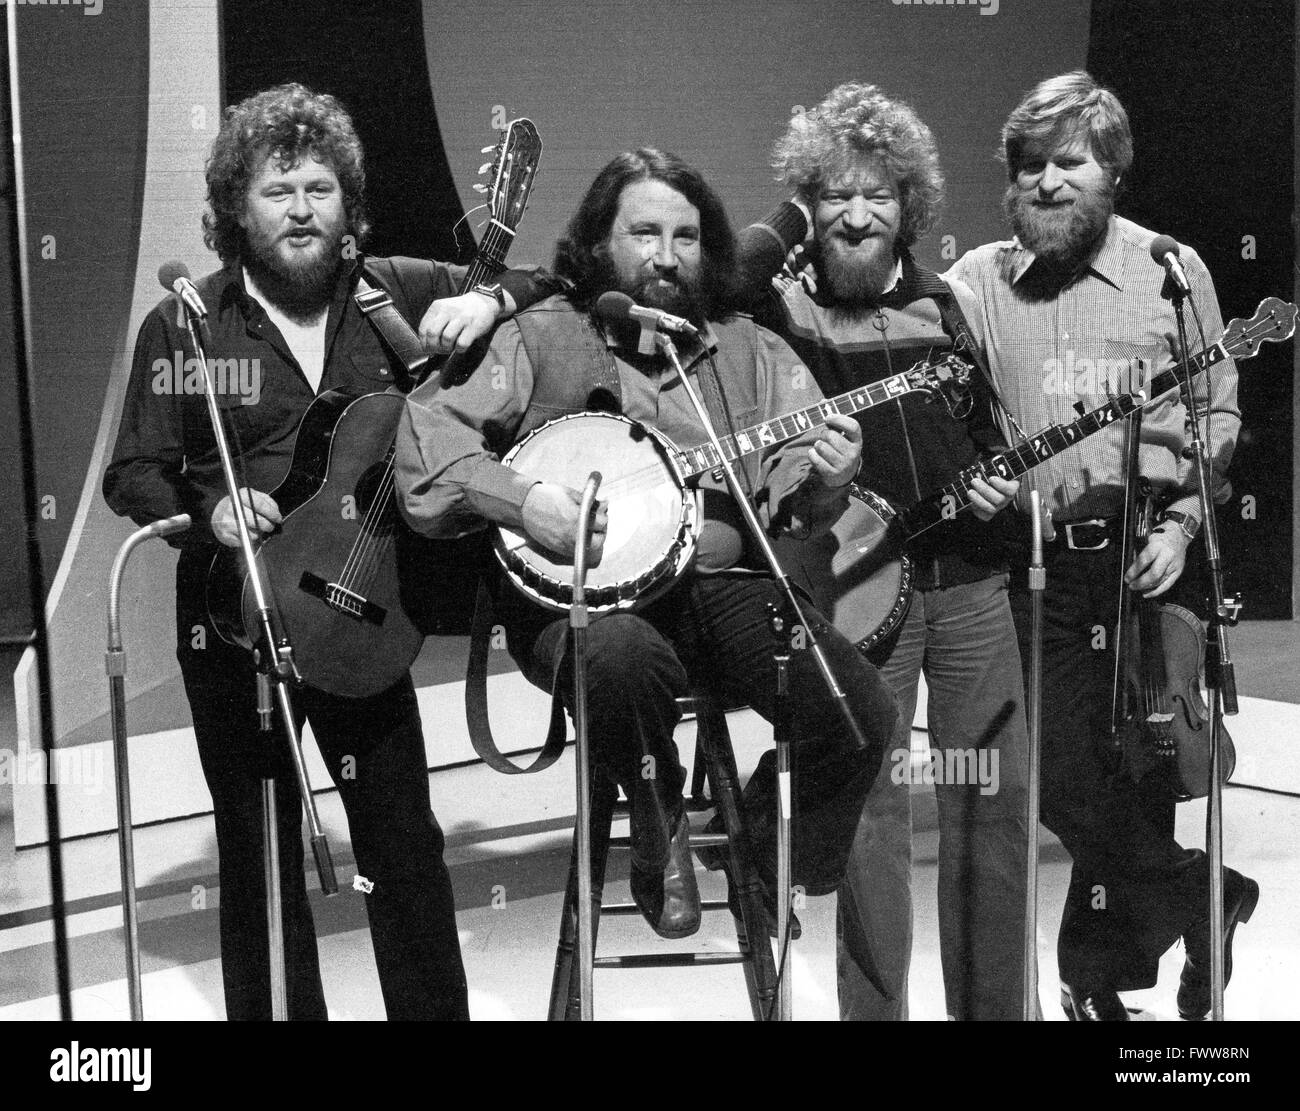 Die Irish Folk Music Band 'The Dubliners, bestehend aus: Luke Kelly, Barney McKenna, John Sheahan und Jim McCann bei einem Auftritt in Deutschland, 1970er Jahre. Stock Photo